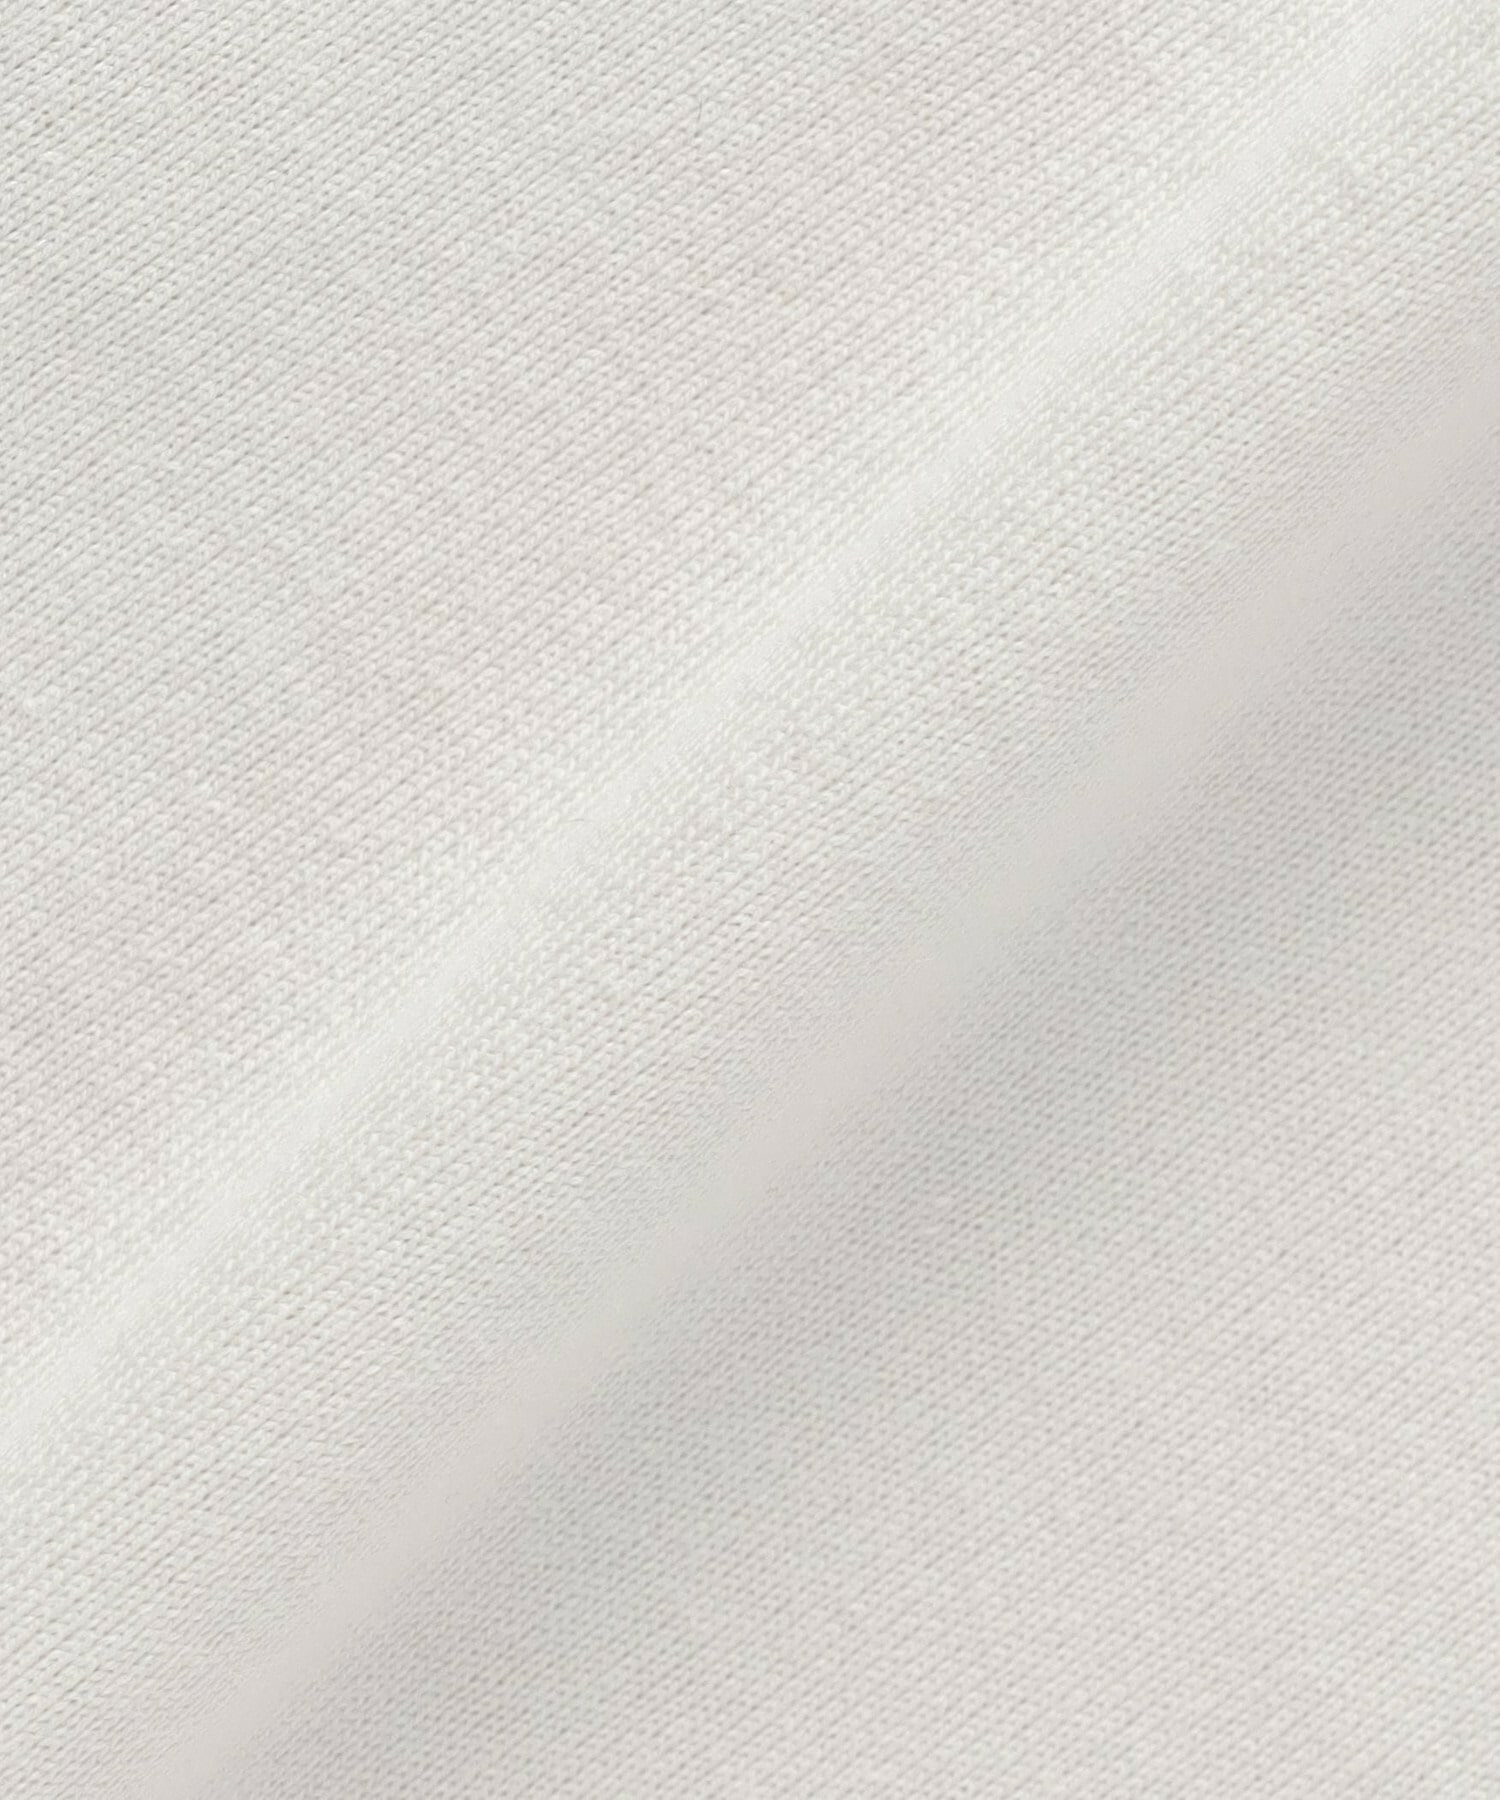 【L'EQUIPE】【Lサイズ】フローイングロゴプリントTシャツ 詳細画像 ホワイト 14